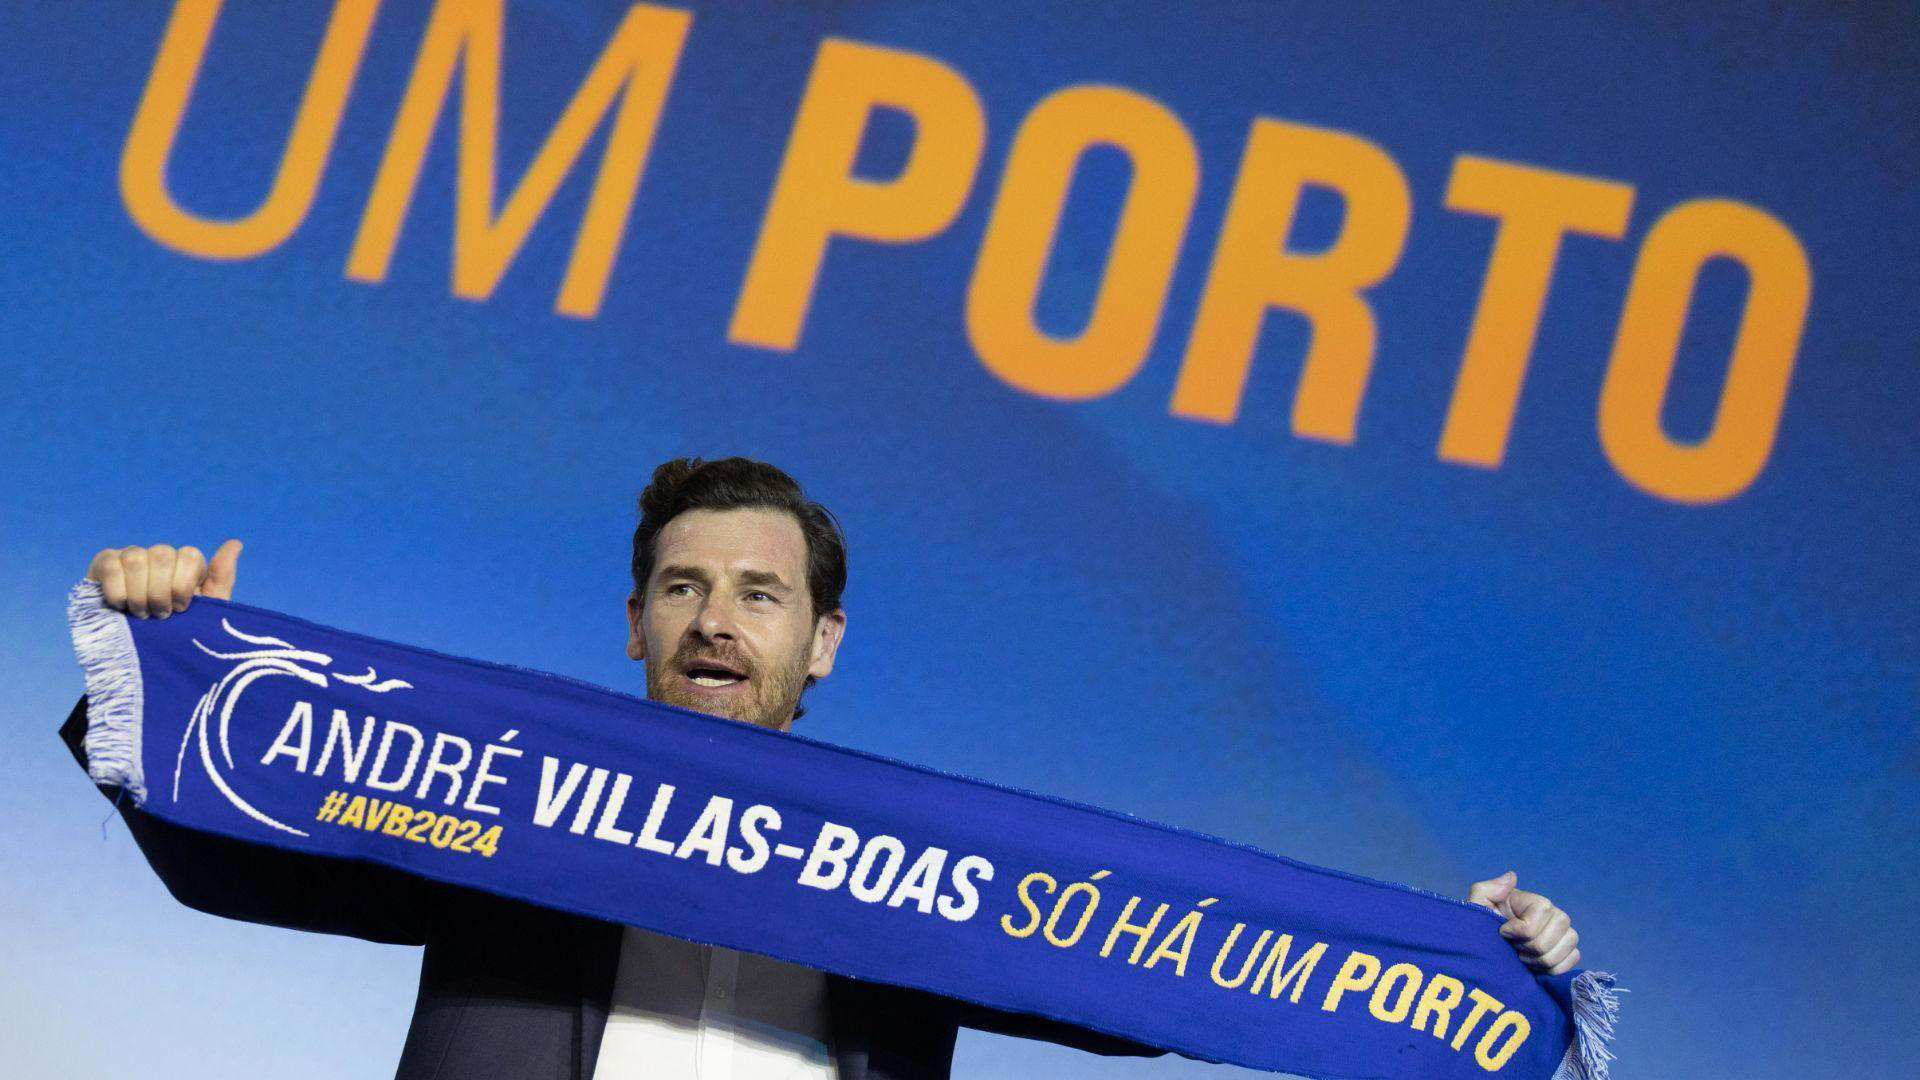 Lunghe code, tensione e un futuro incerto: il destino del Porto nelle mani di Villas-Boas